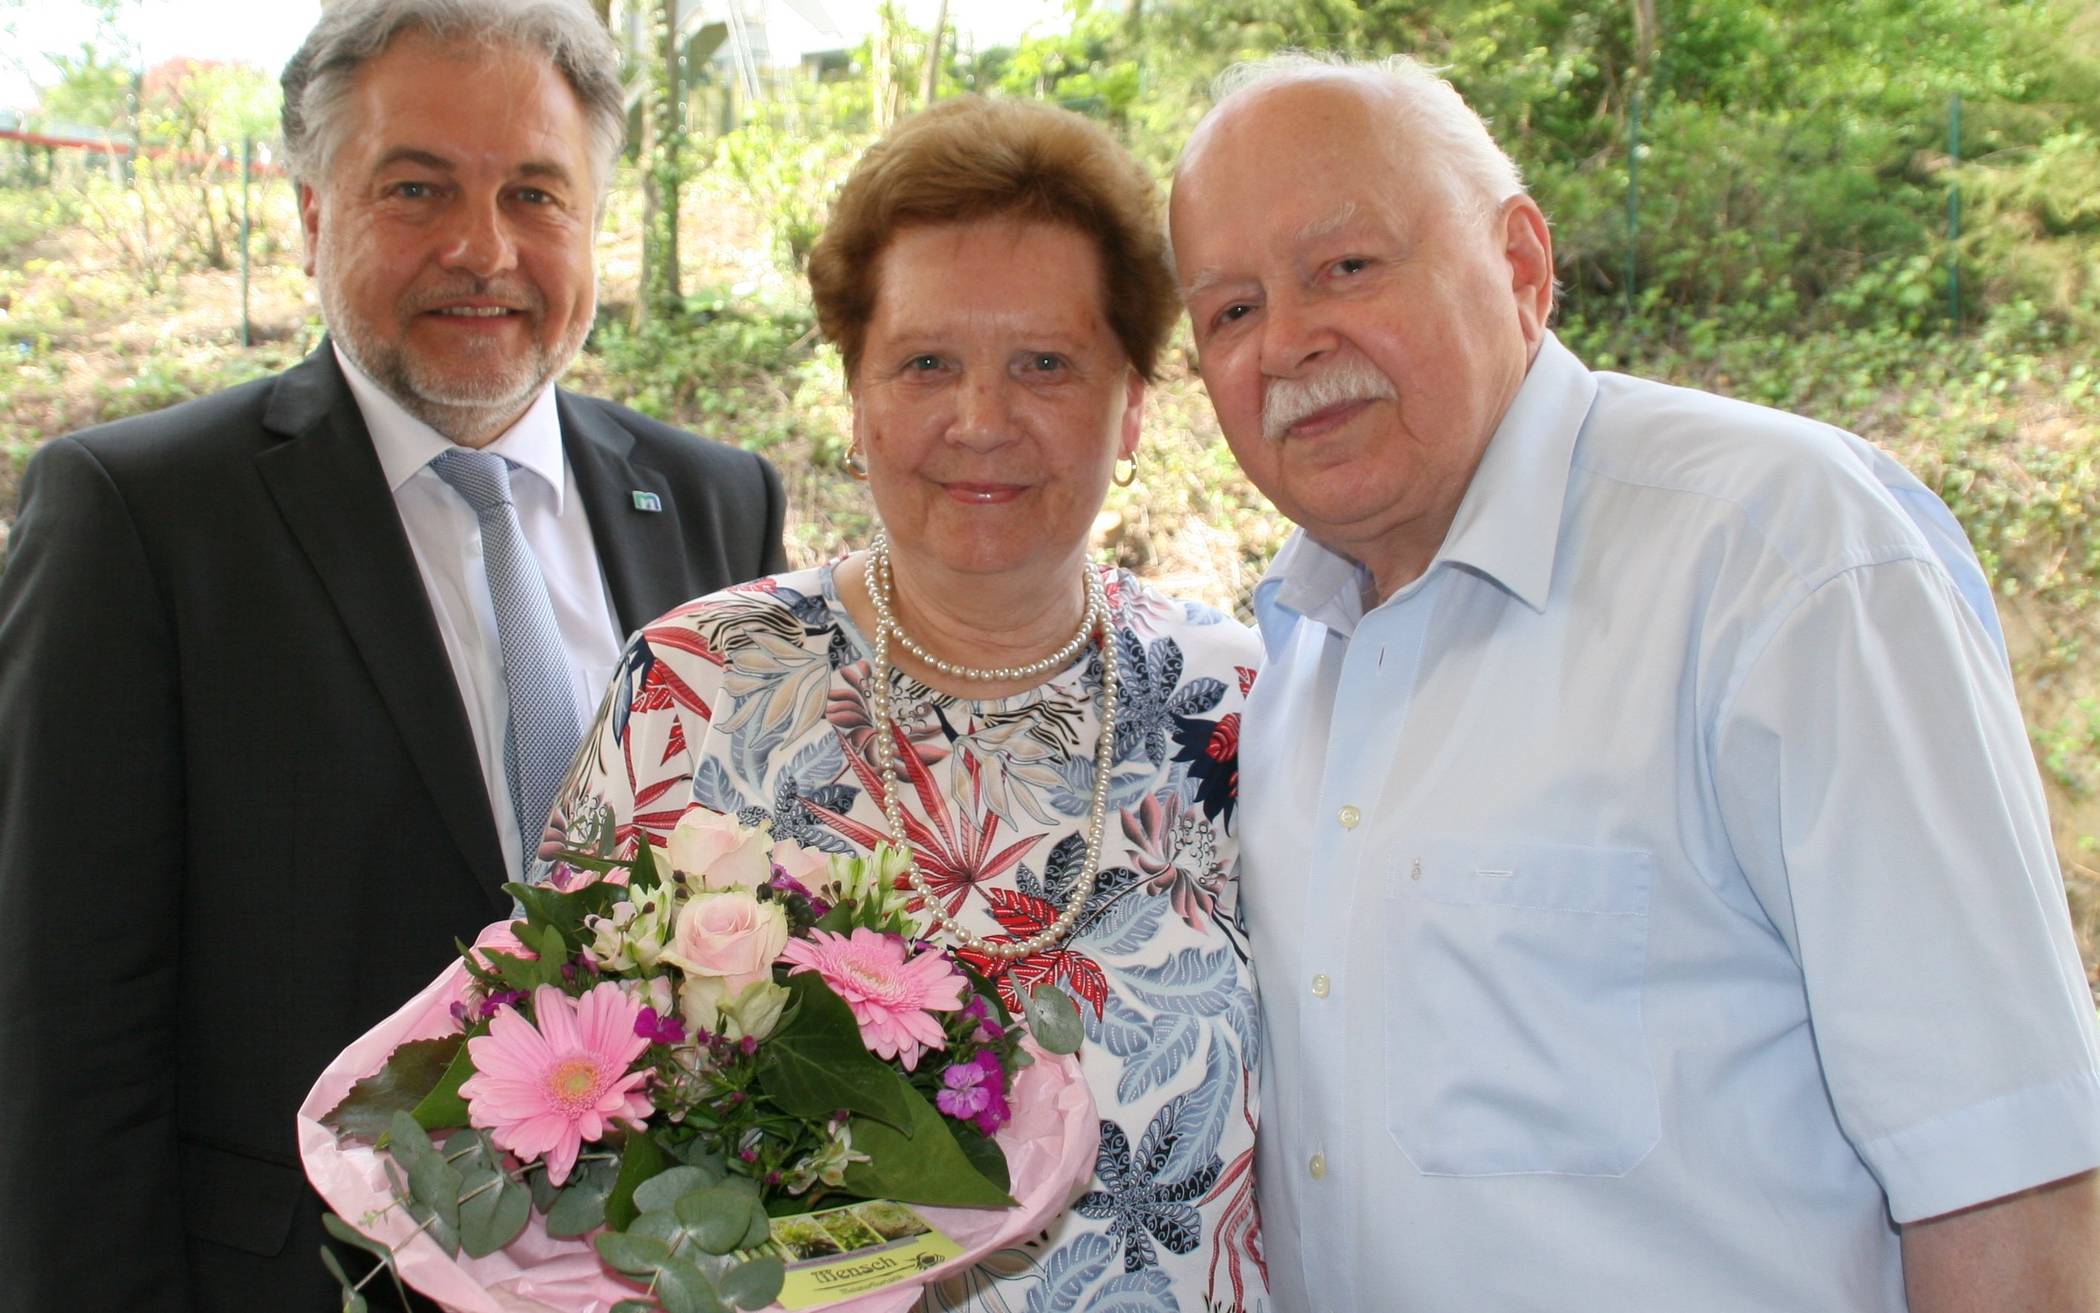 Jubiläumsbild mit Bürgermeister: Thomas Dinkelmann gratulierte